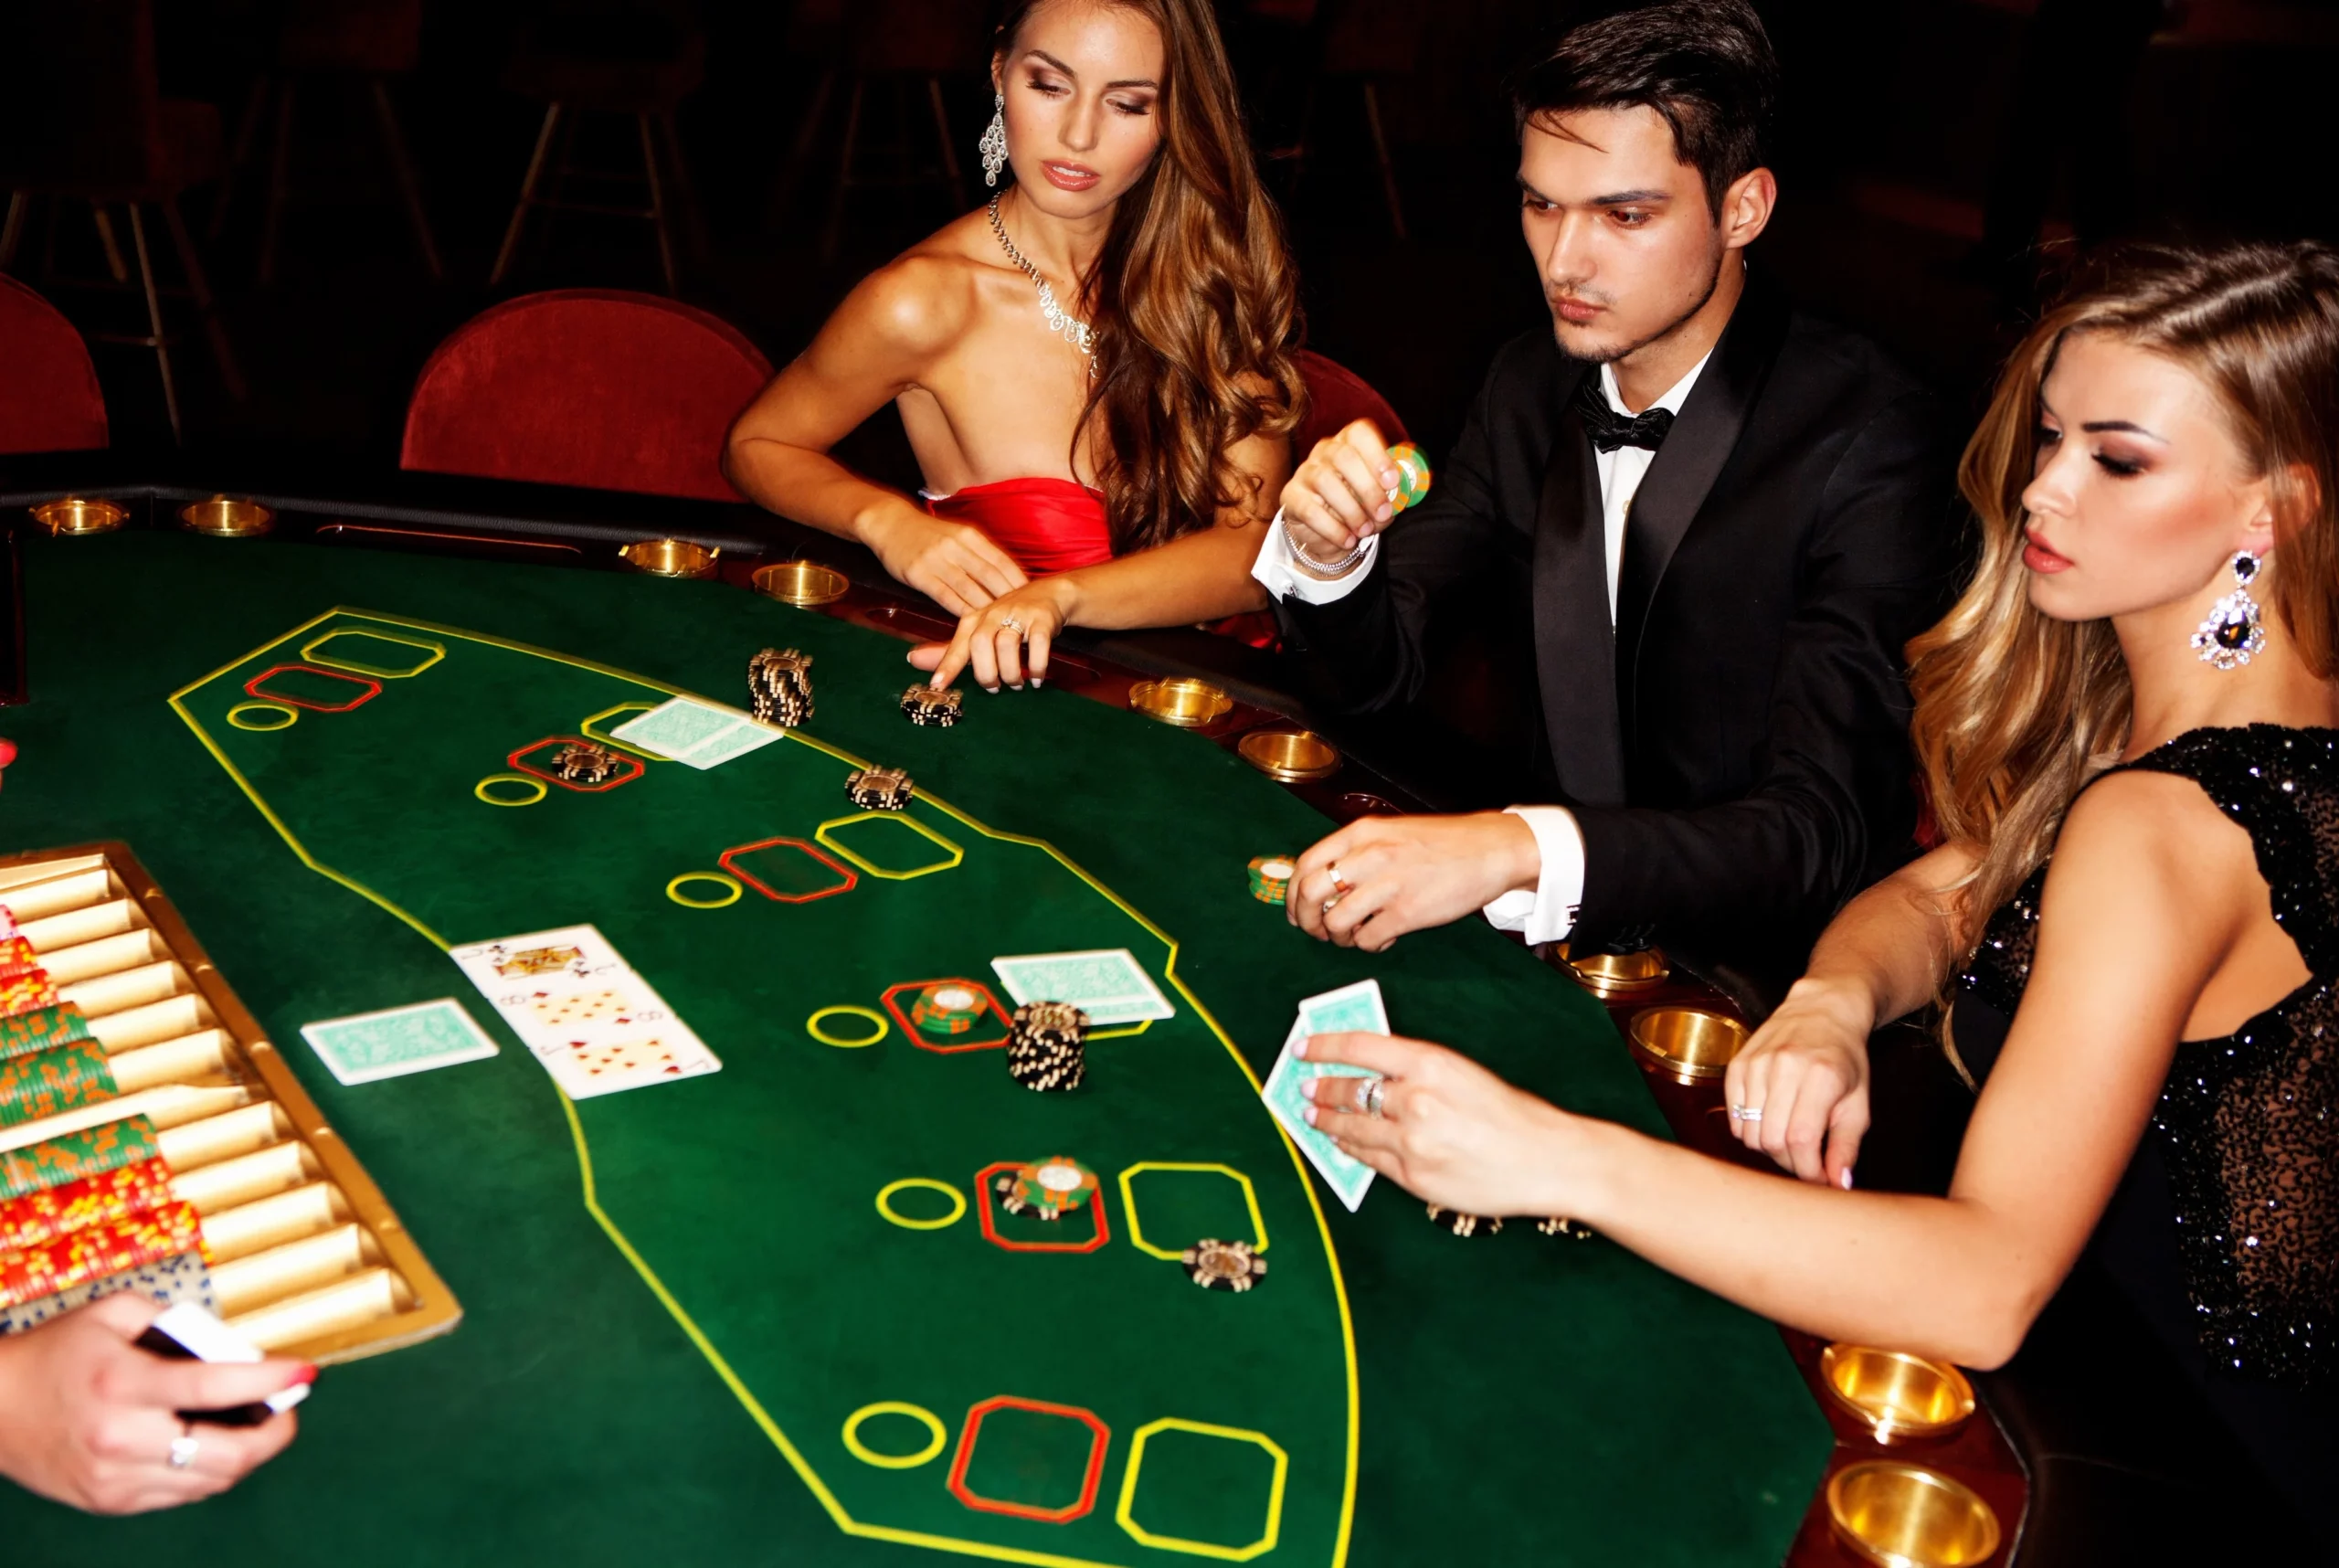 Casino date in Switzerland with VIP escort girl